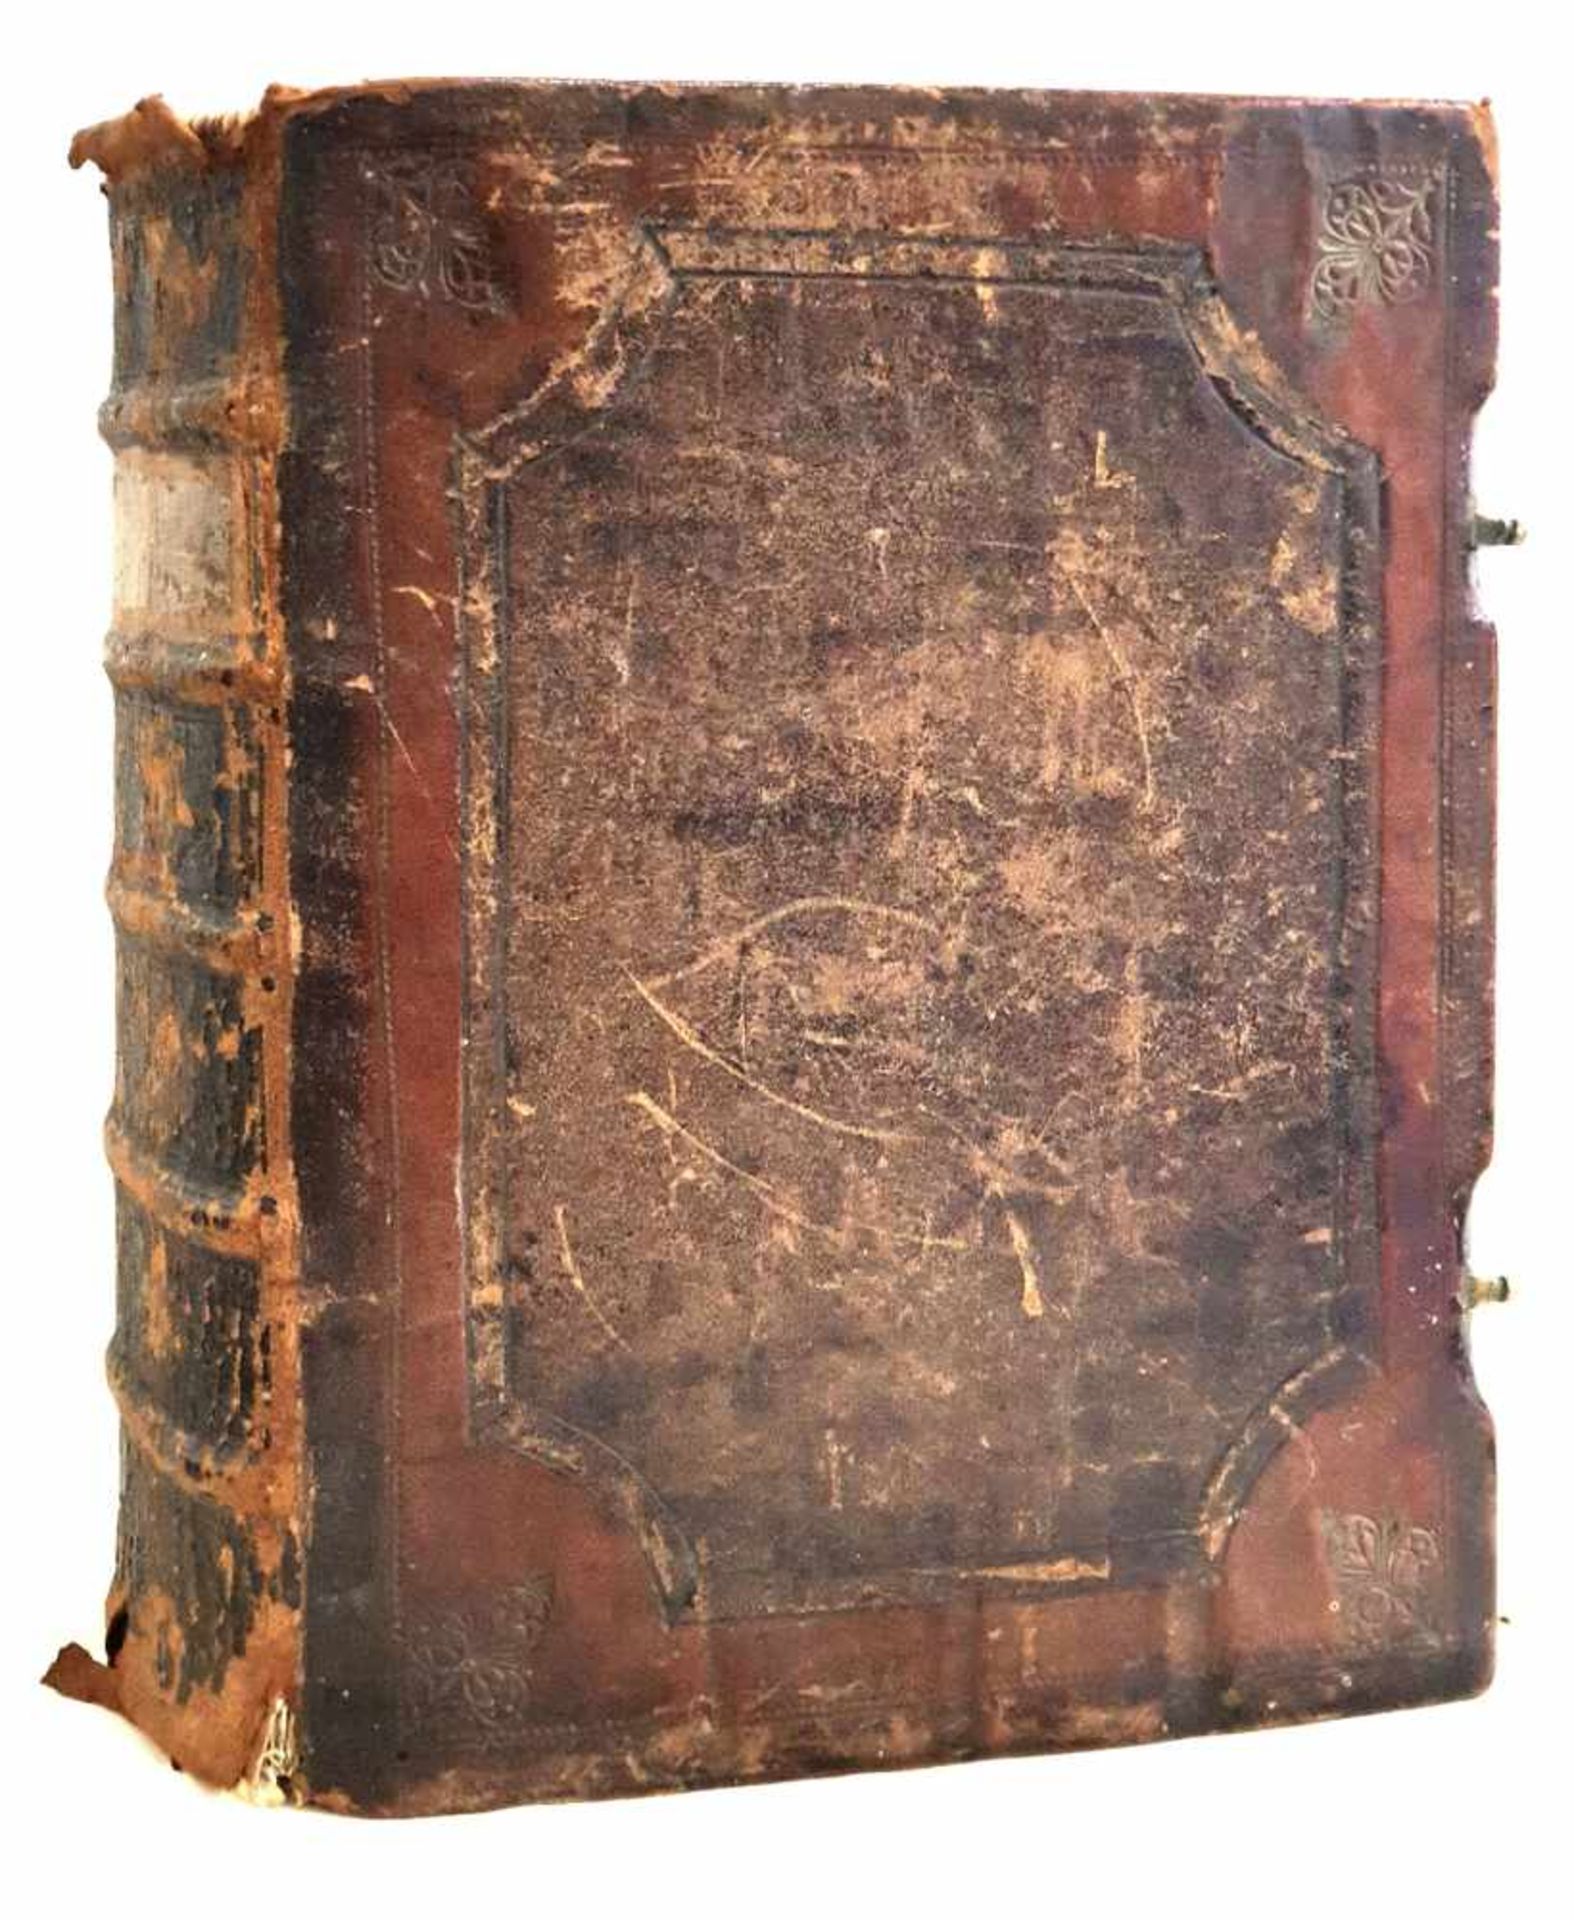 IMPORTANT LIVRE, MAGDEBURG, 1729Christian Schrivers, Seelen SchabesImportant livre d'enviro - Bild 2 aus 5